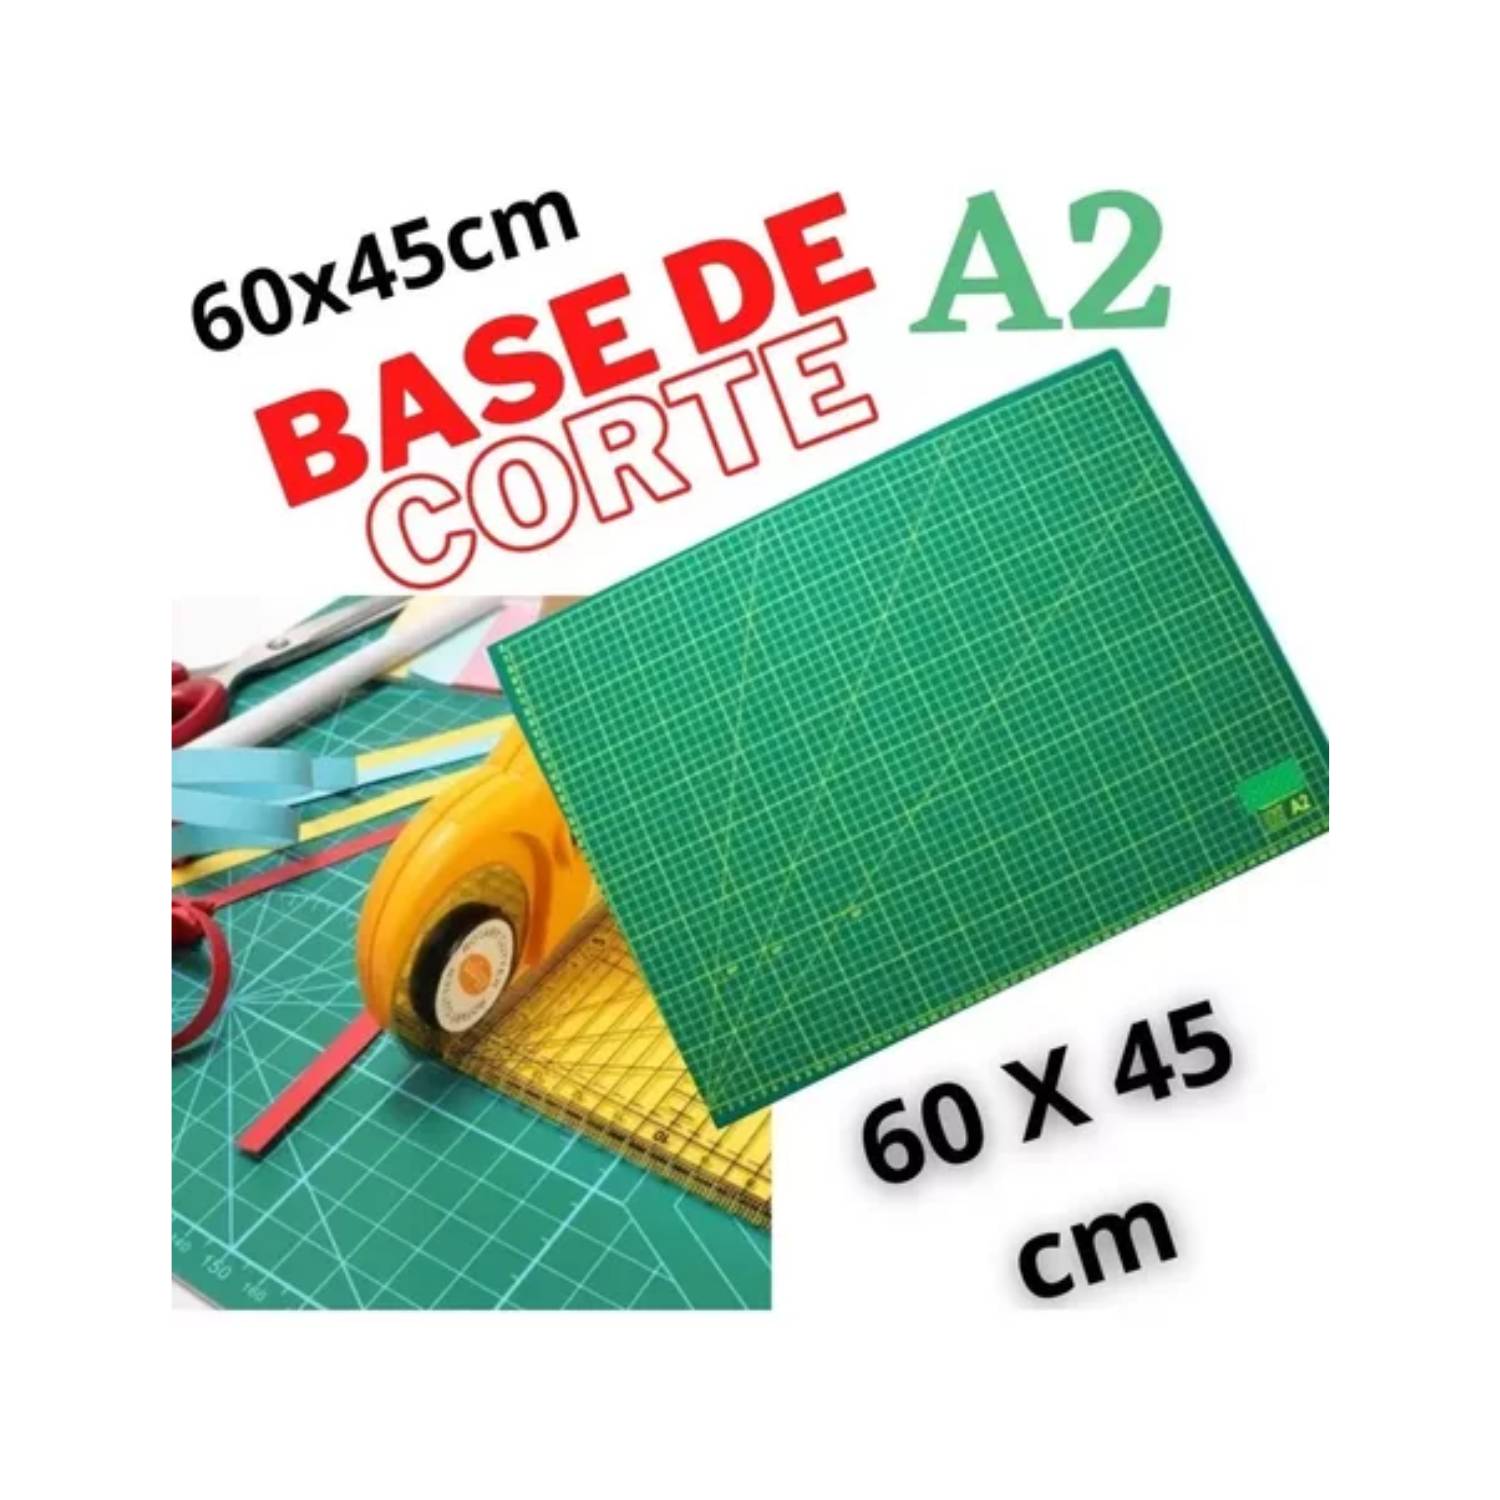 Base De Corte A2 Multiuso, Tabla de Corte A2 - 60 x 45 cm GENERICO